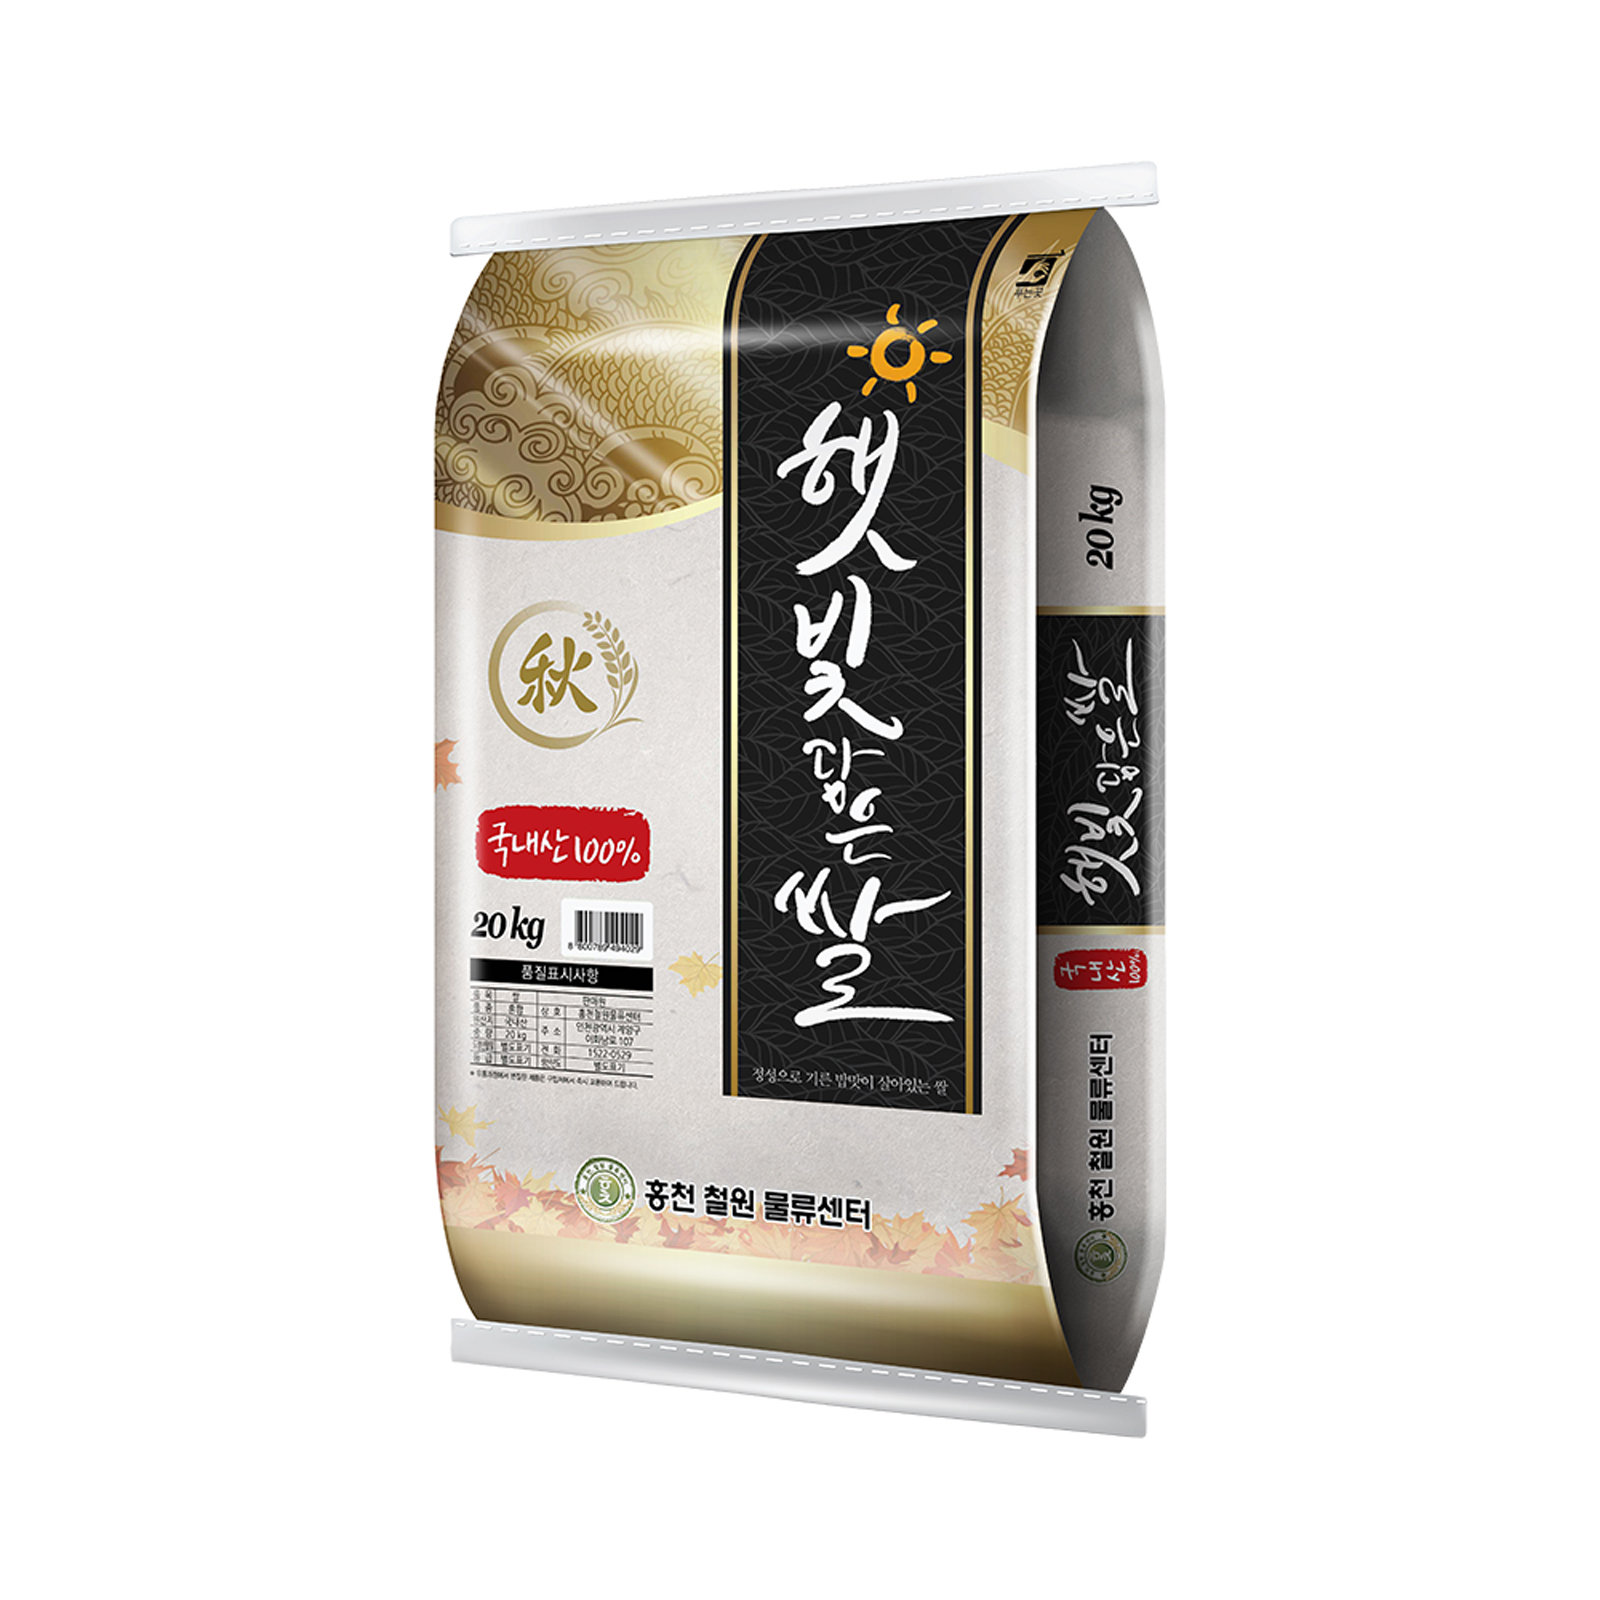 홍천철원 23년 햅쌀 햇빛담은쌀 20kg